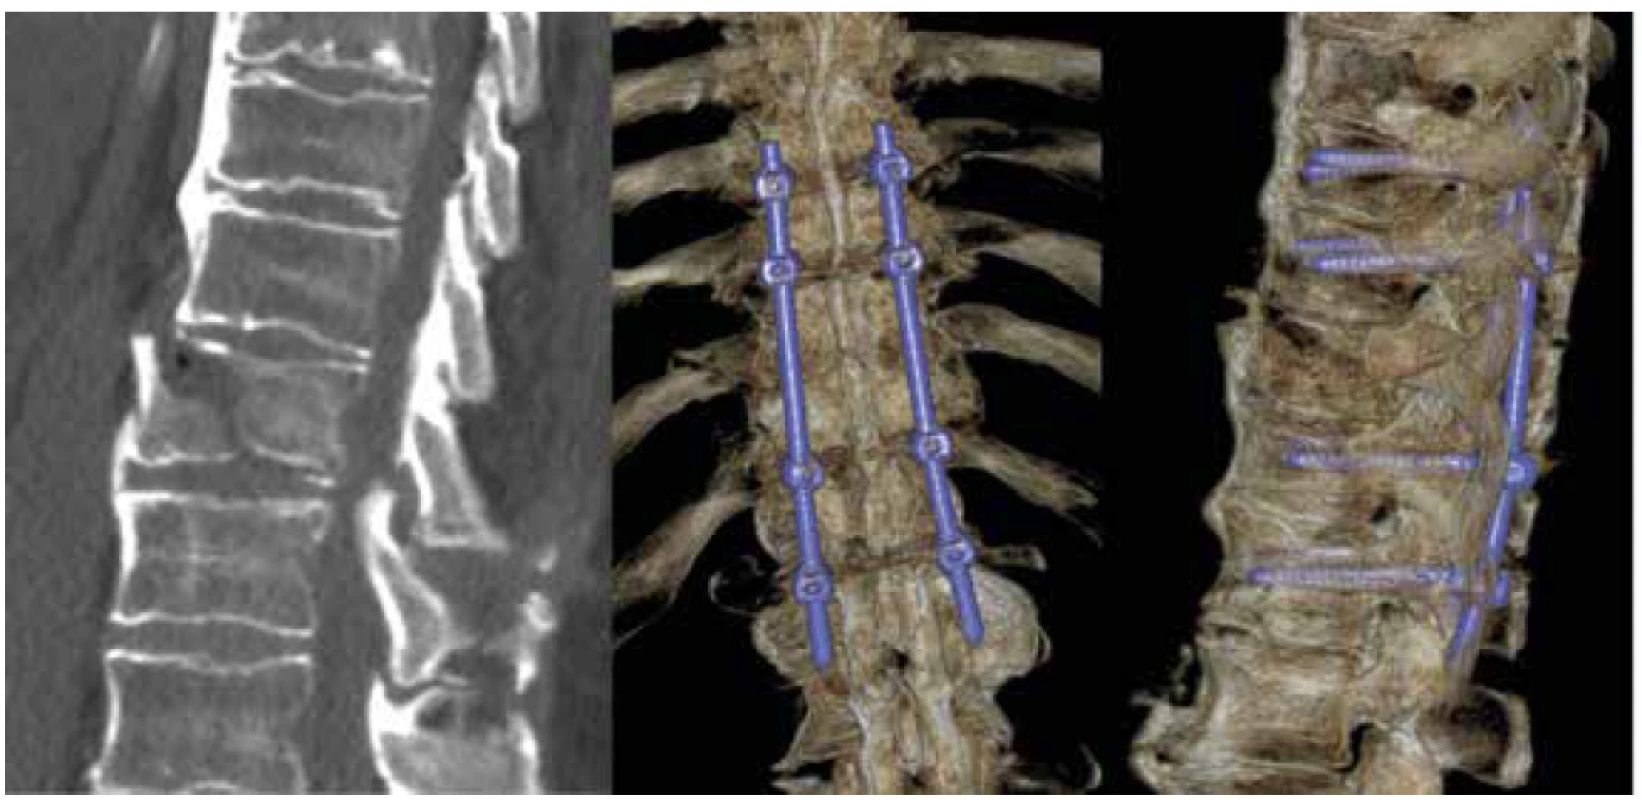 Zlomenina Th10 u pacienta s DISH (M2) mechanismem hyperextenze s poranění předního závěsného
aparátu (B3) bez neurologické léze (N0) TL AOSIS – 7, řešena dlouhou transpedikulární instrumentací
ze zadního přístupu<br>
Fig. 2. Fracture of Th10 in DISH patient (M2) with anterior tension band injury from hyperextension (B3),
without neurological deficit (N0) TL AOSIS – 7, treated by posterior transpedicular long instrumentation